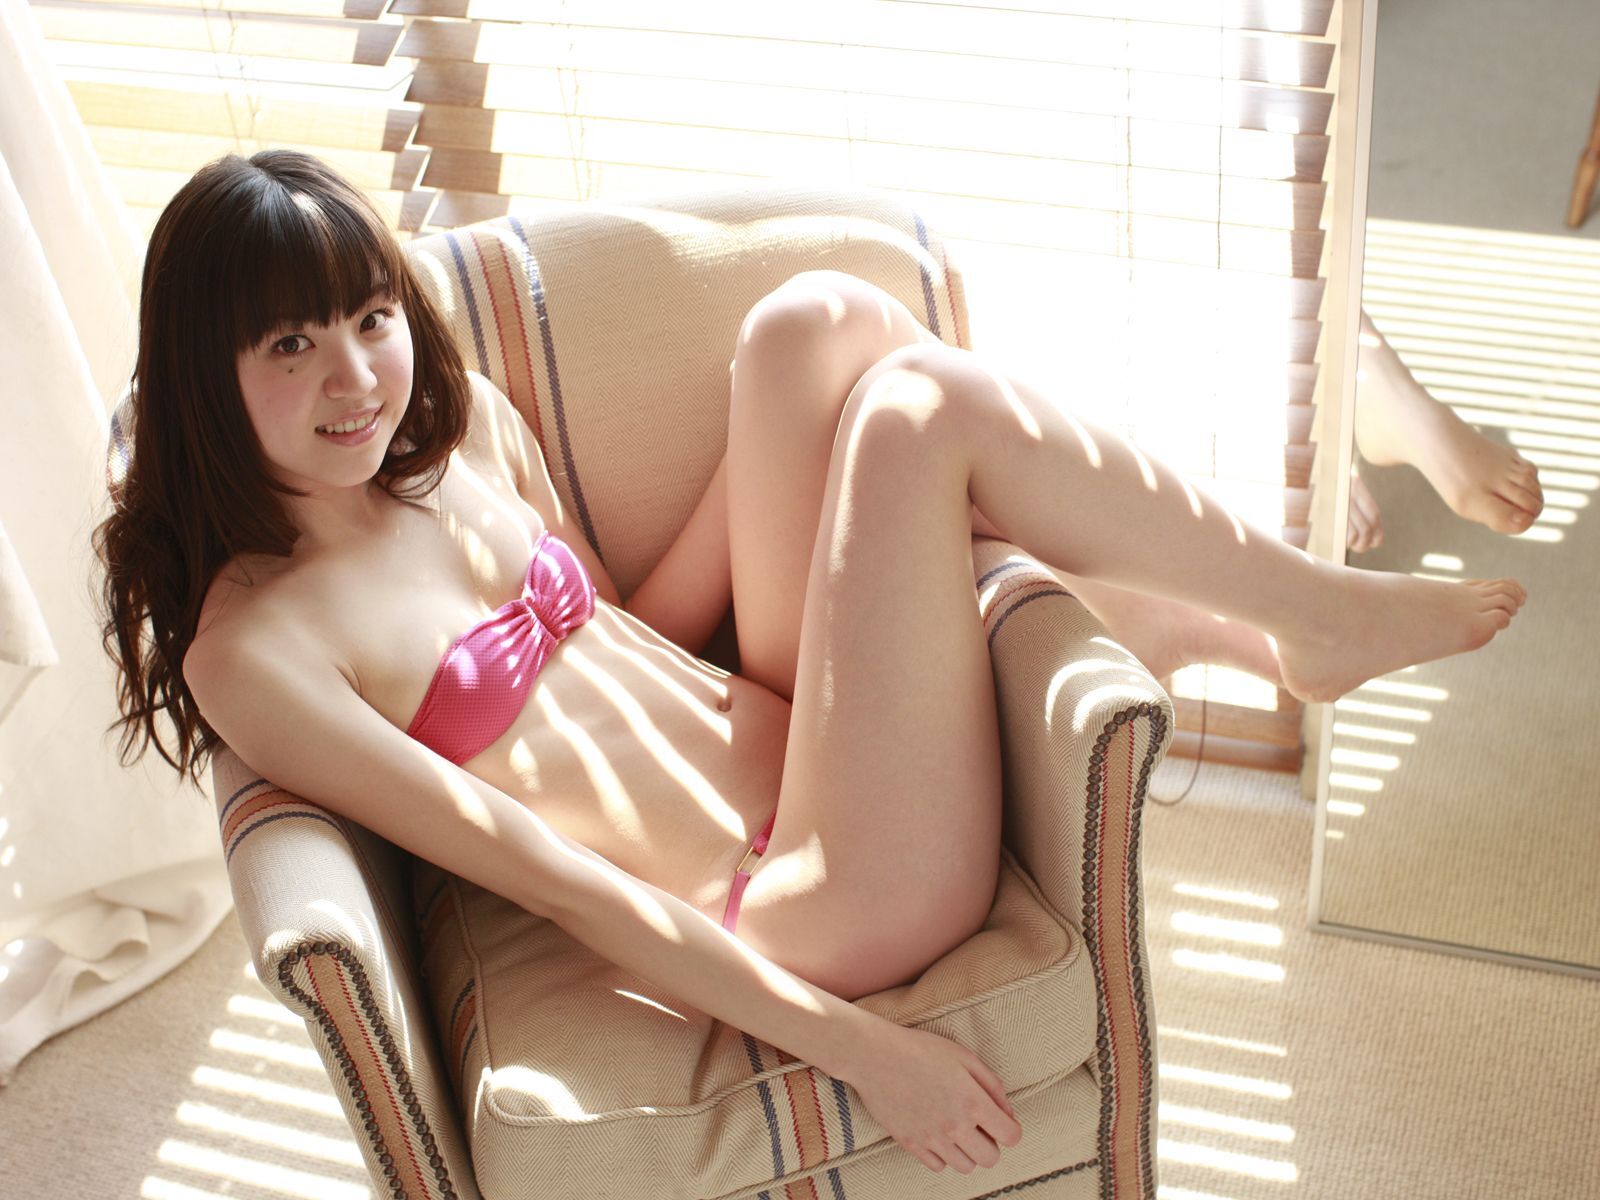 船岡咲[Sabra.net] 2012.06.21 strictly GIRLS 日本性感美女图片